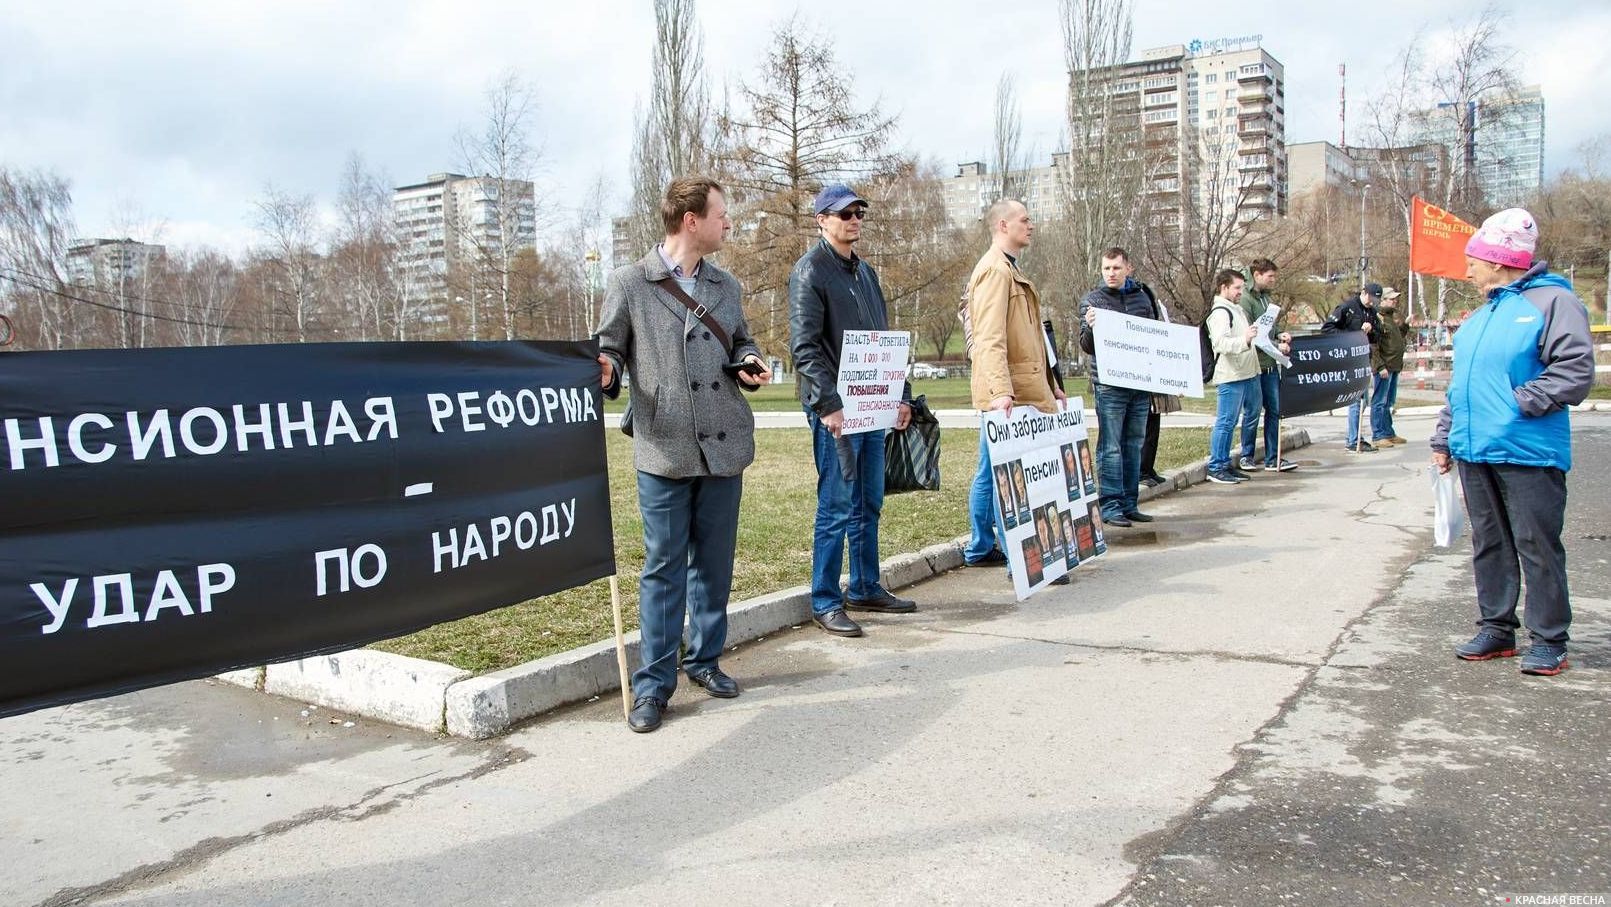 Пикет против пенсионной реформы 03.05.19. Пермь